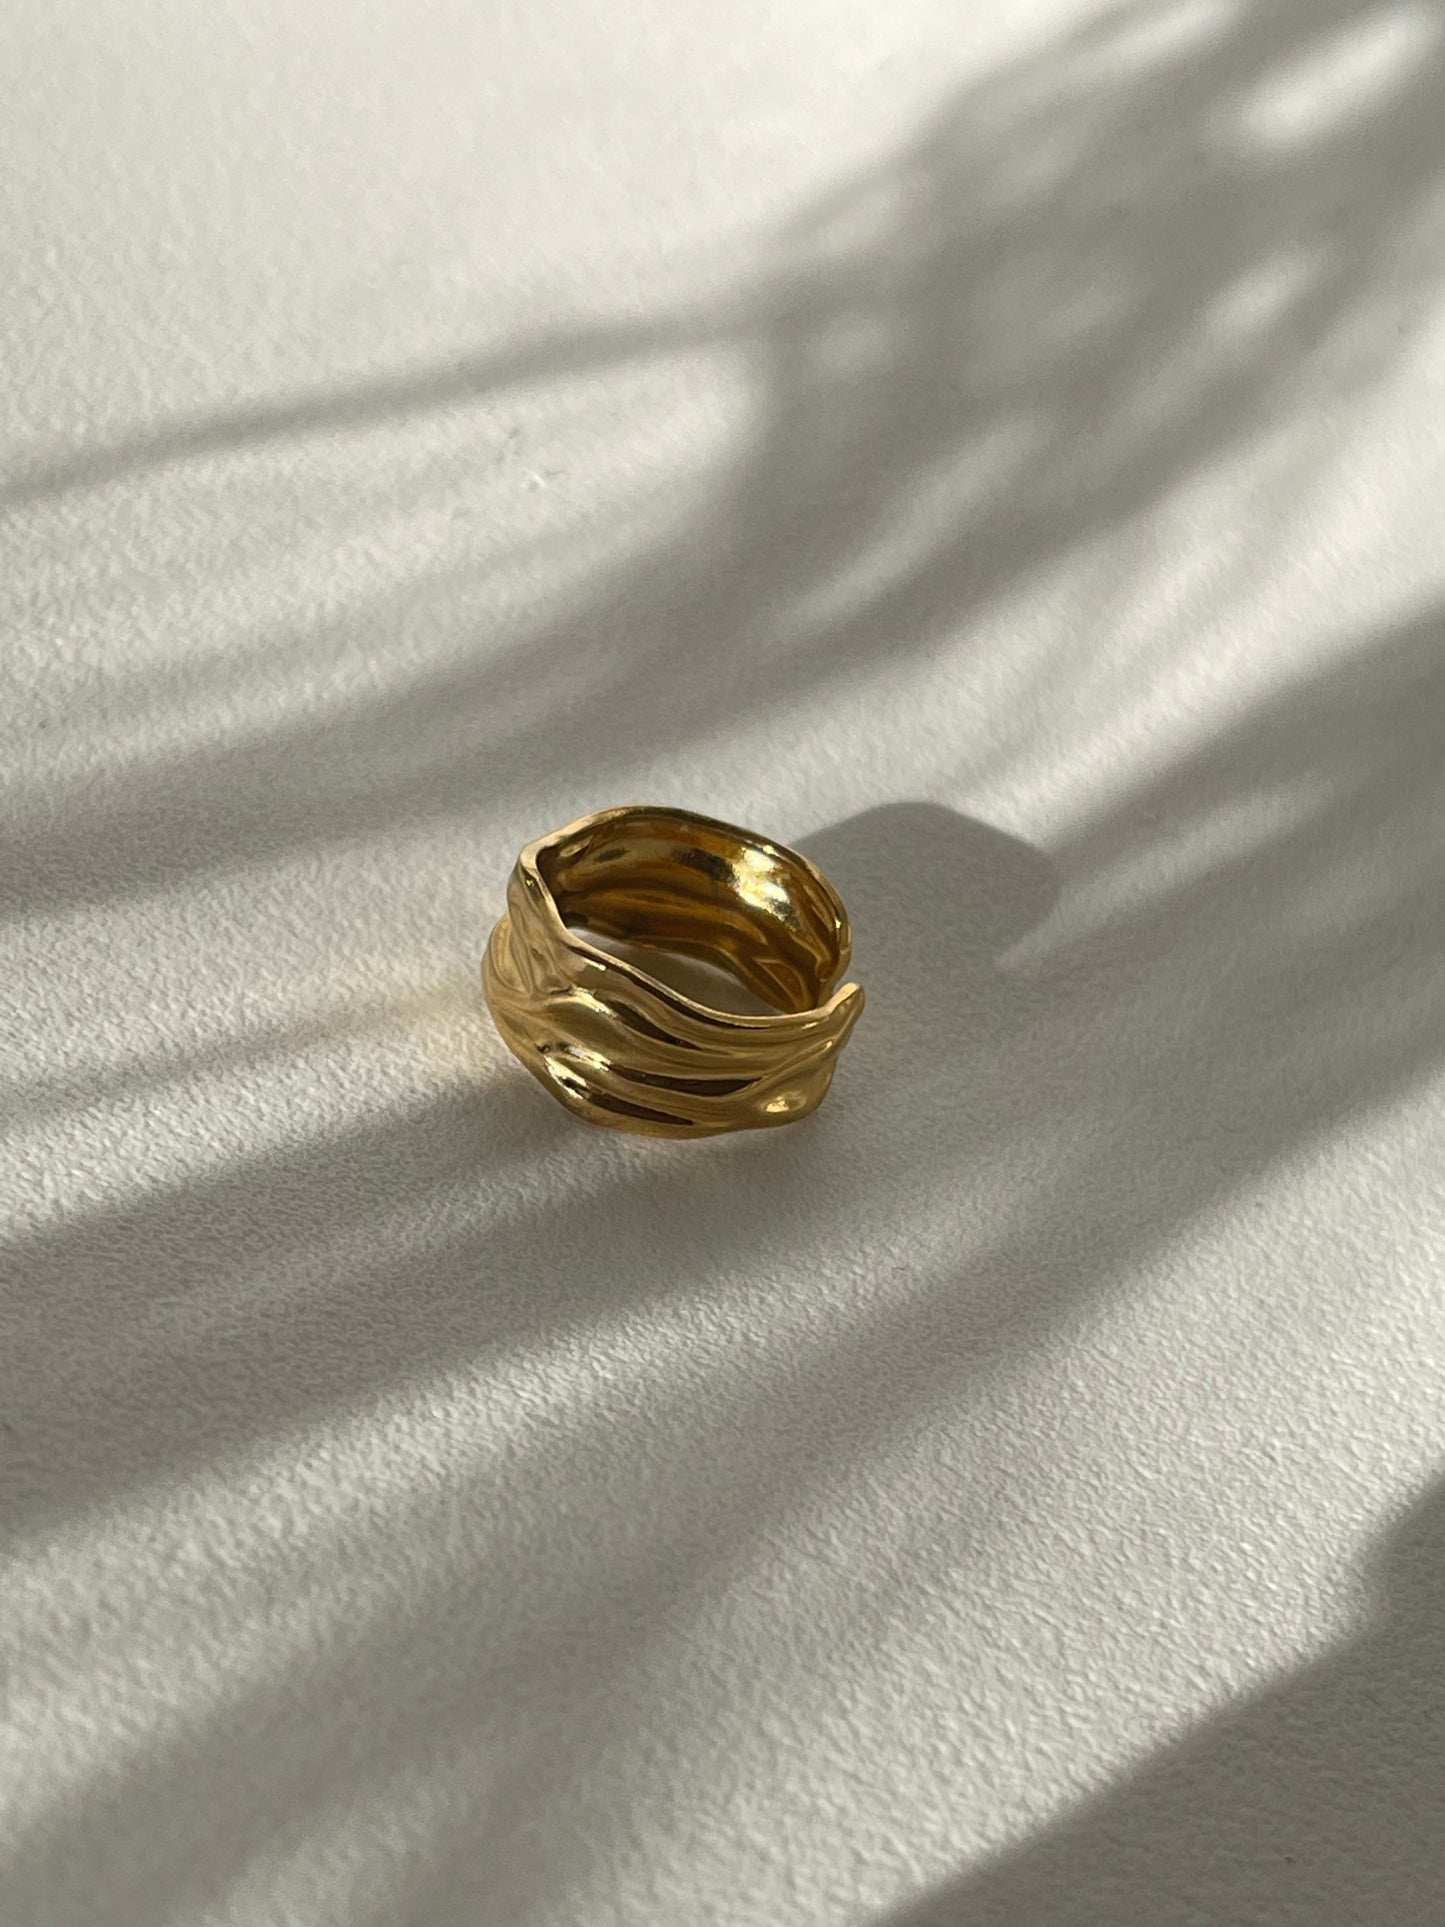 Desert Floor Organic Stainless Steel Ring In 18k Gold Plated